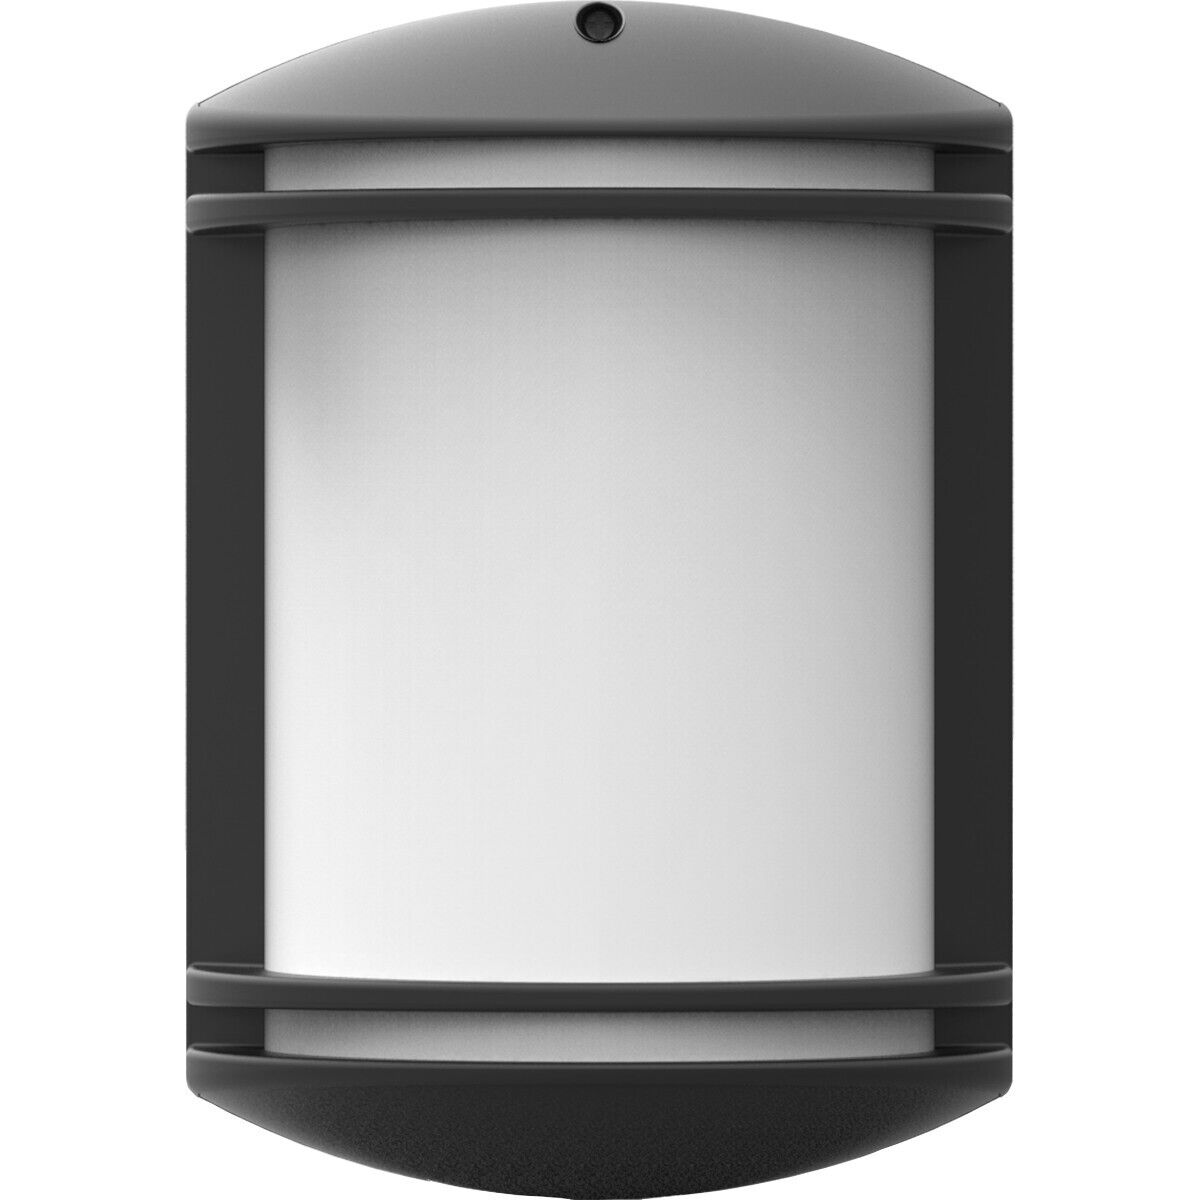 BES LED LED Tuinverlichting - Wandlamp - Achina 4 - Kunststof Mat Zwart - E27 Fitting - Ovaal